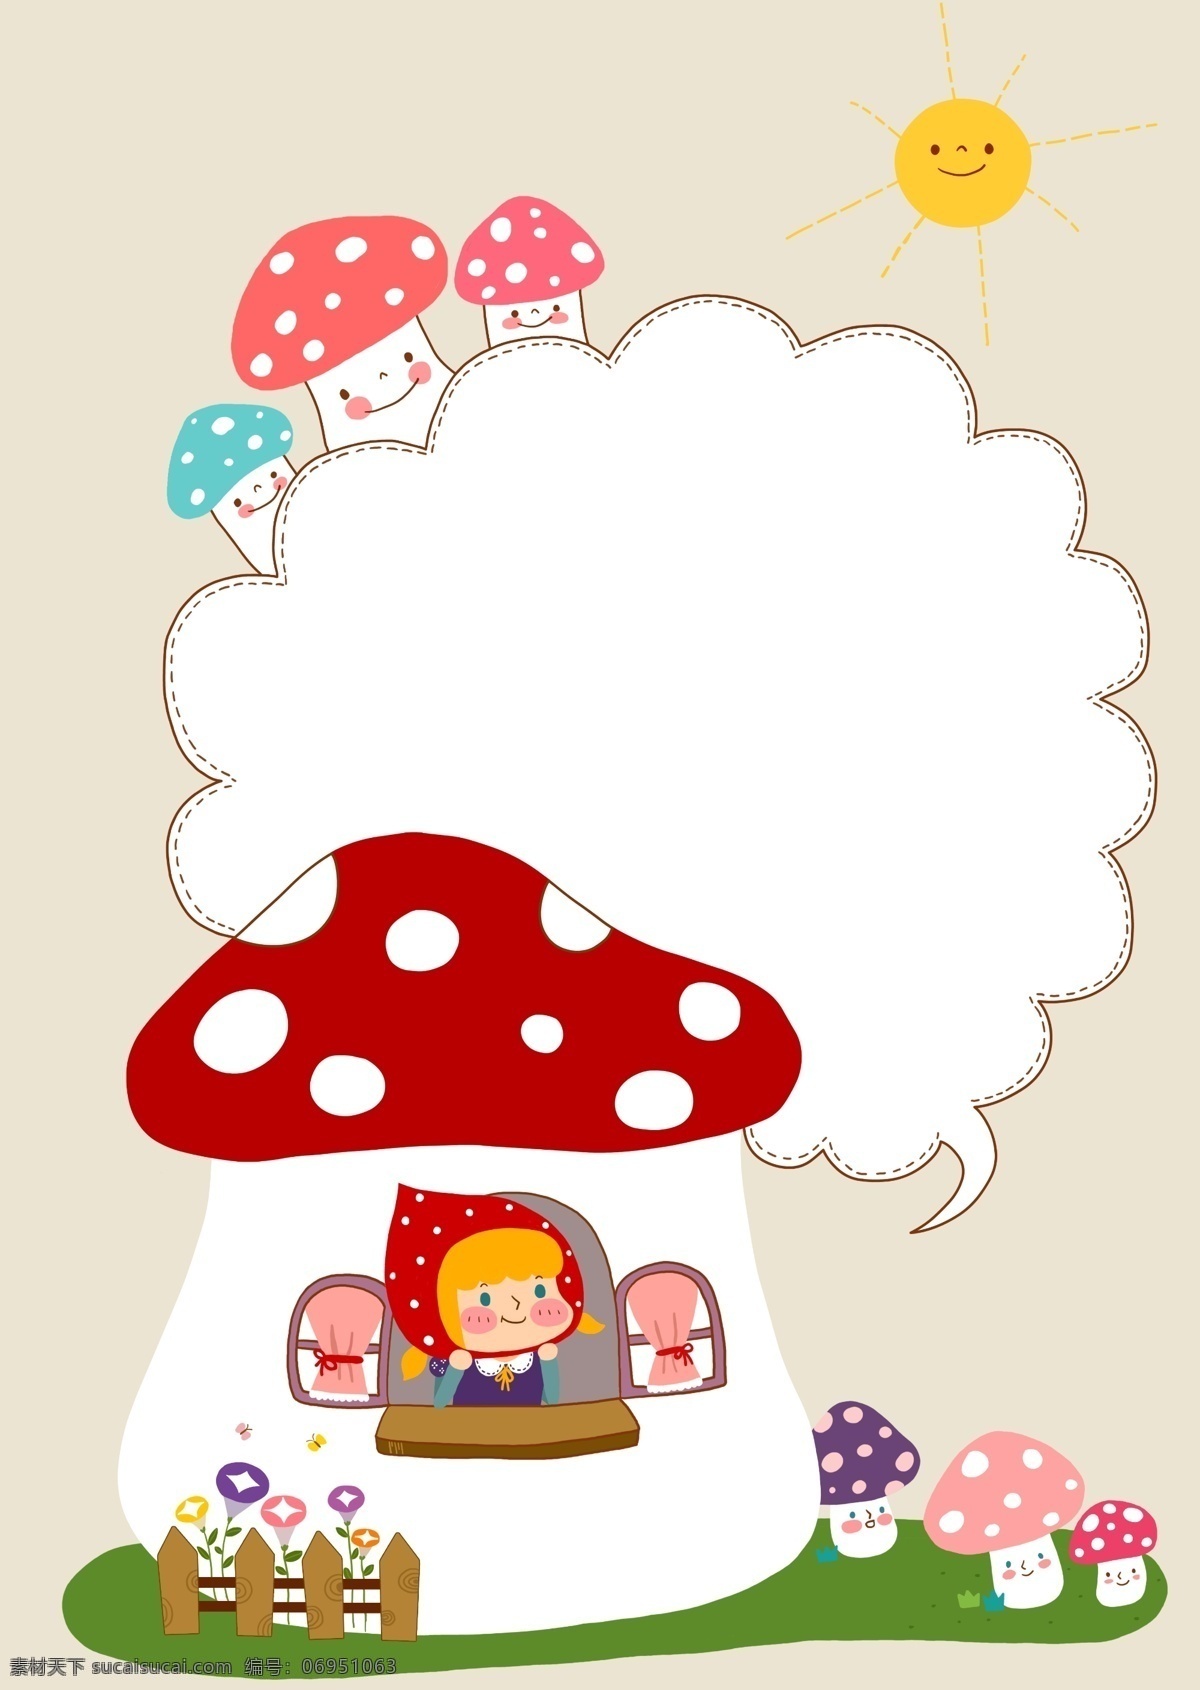 蘑菇 房子 小红帽 对话框 psd素材 插画 蘑菇房子 太阳 psd源文件